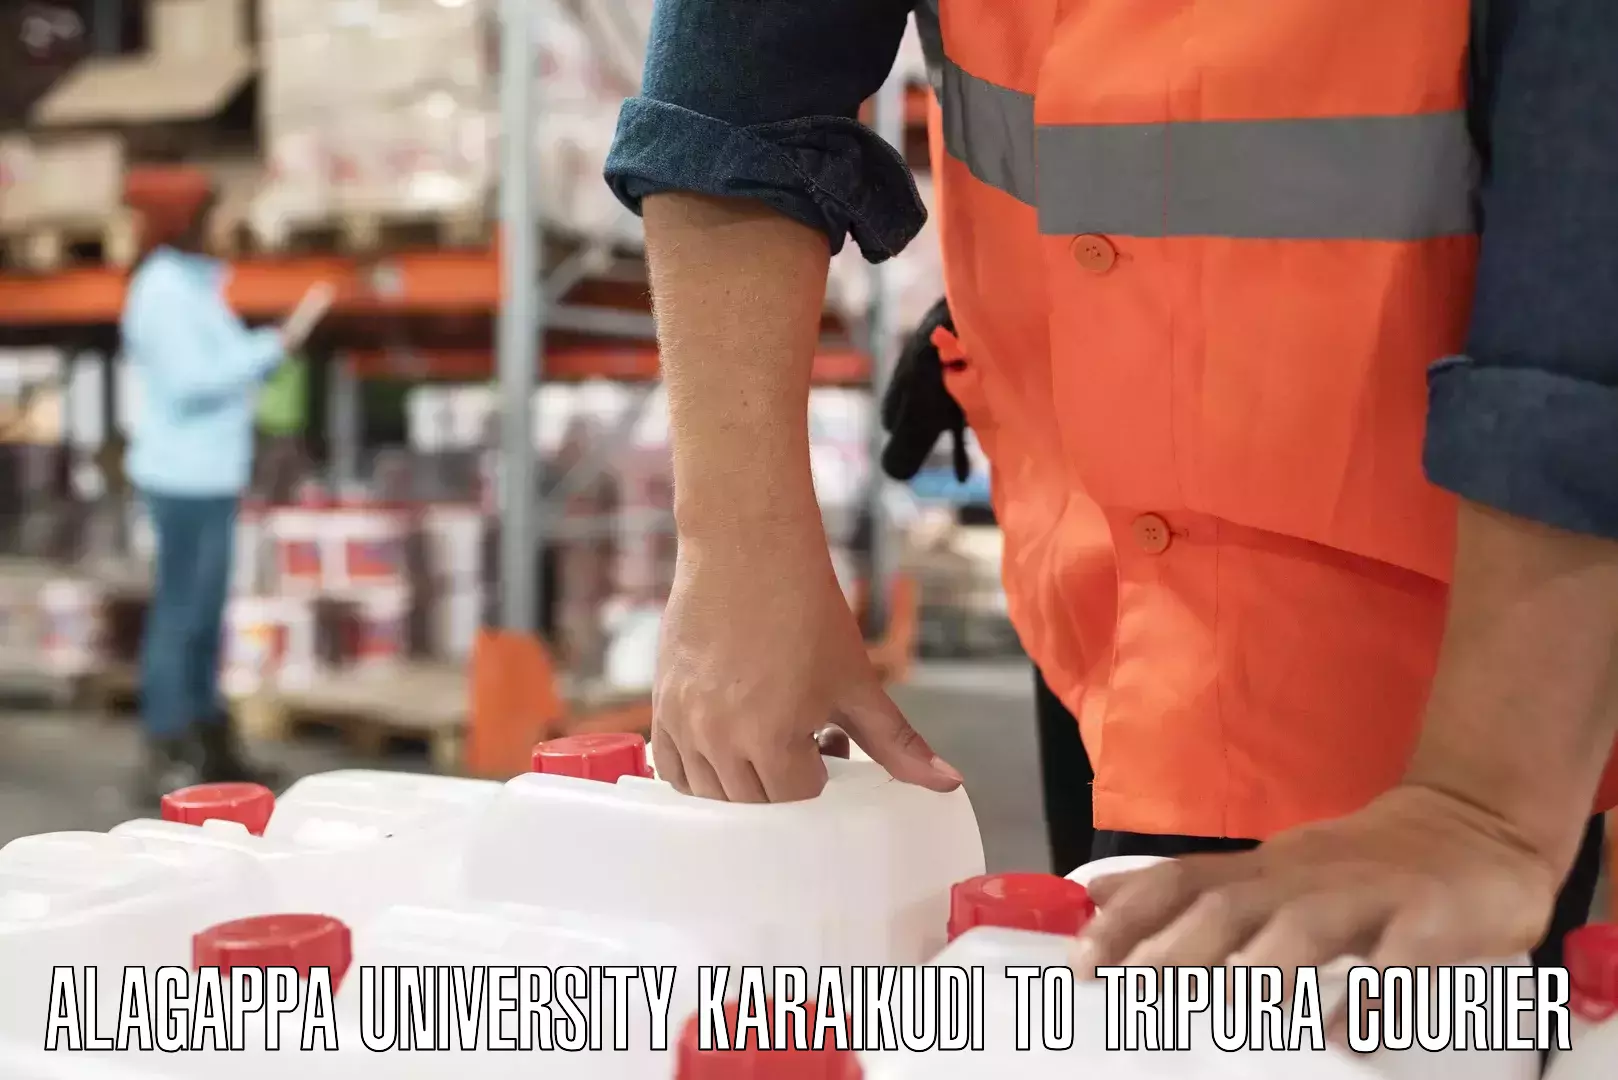 End-to-end delivery Alagappa University Karaikudi to Agartala